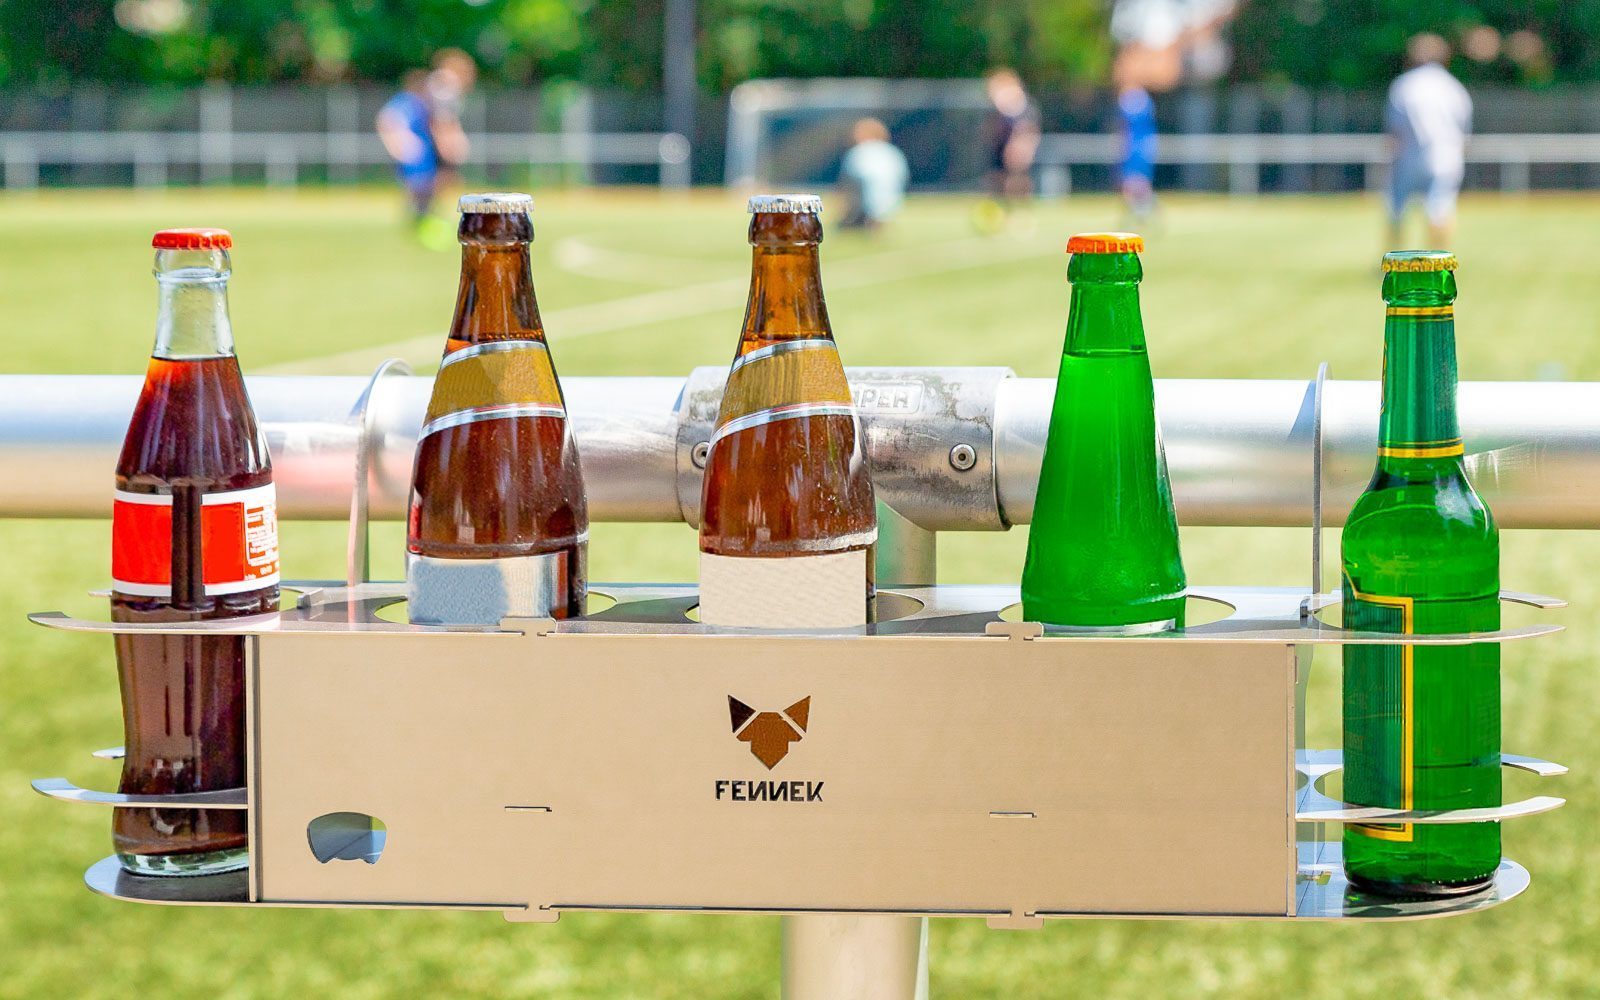 Fünf Glasflaschen in einem Getränkehalter aus Edelstahl mit FENNEK-Logo in der Mitte, befestigt am Fussballspielfeldrand. Im Hintergrund unscharf Fussballspieler.